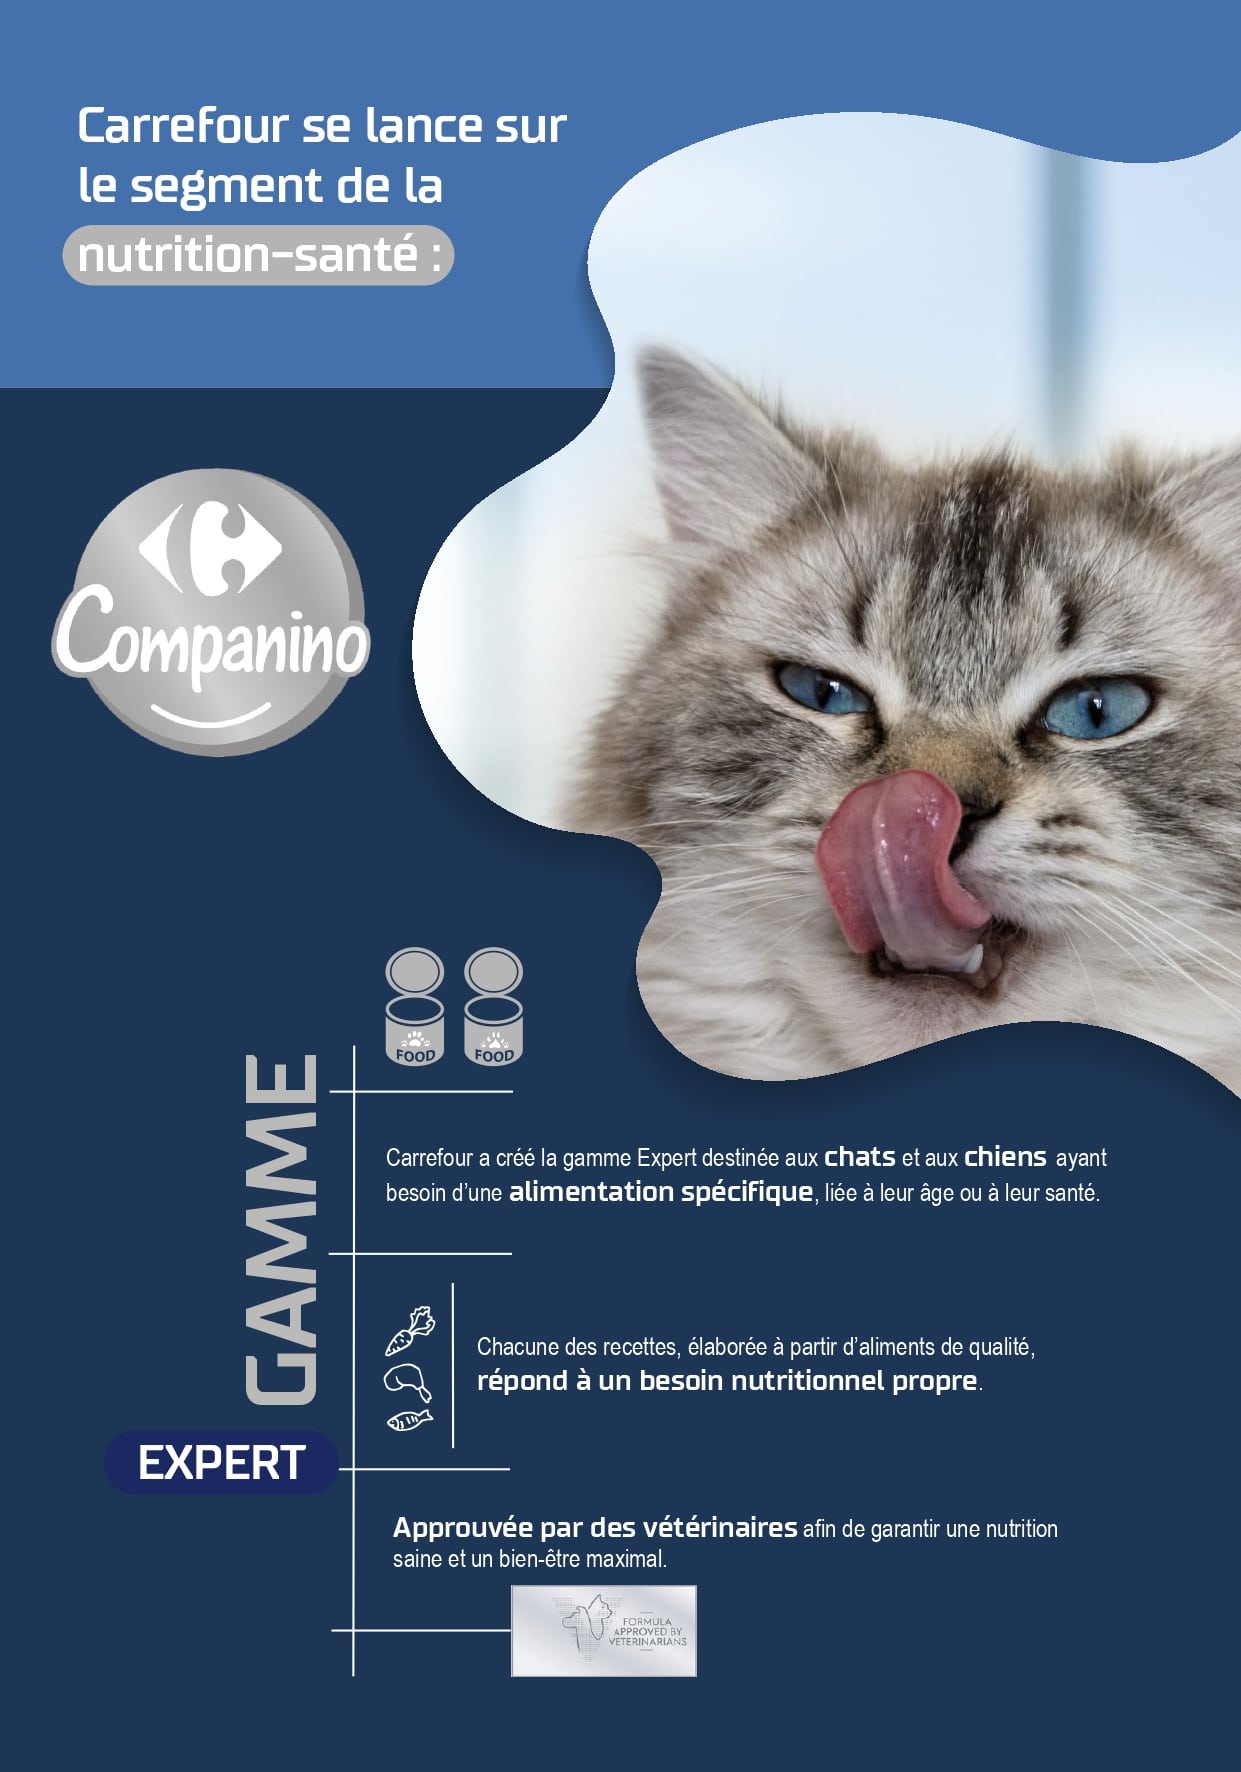 Carrefour Lance 47 Innovations À Marque Propre Sur Le Rayon Petfood - Companino 1Ère Marque Propre Qui Répond À Tous Les Besoins De Nos Animaux À Prix Accessible !